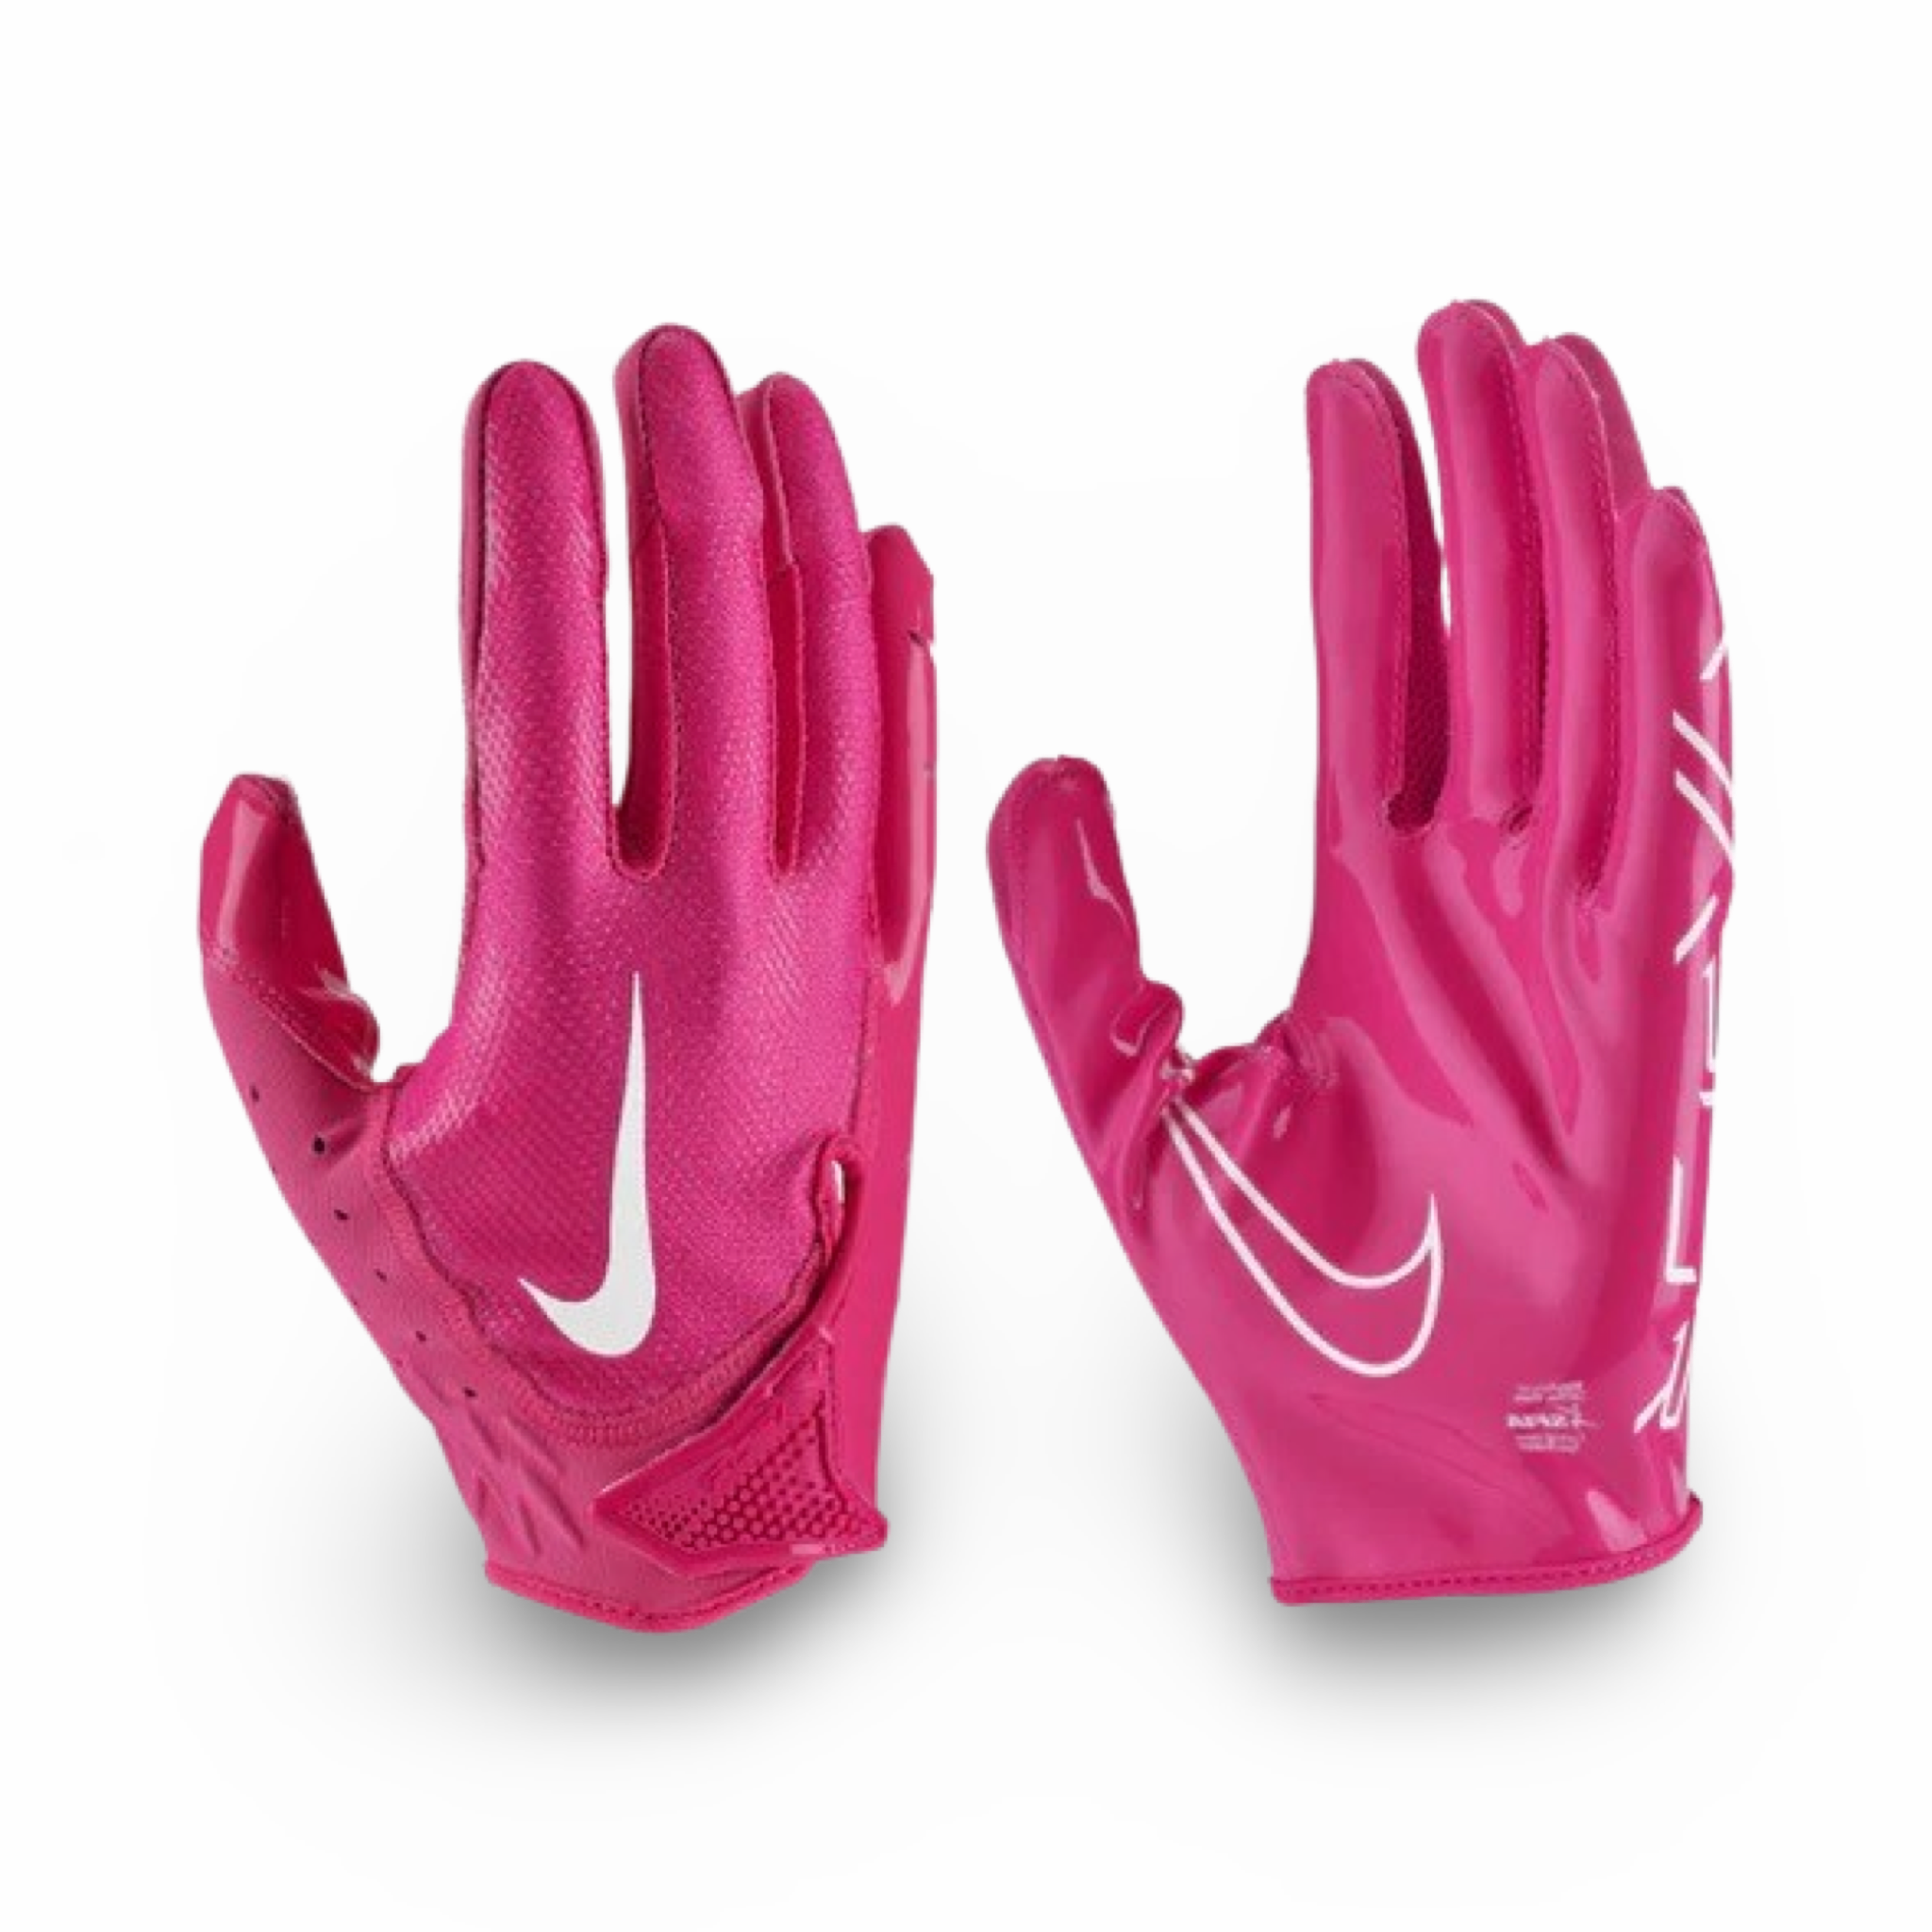 Nike Men’s Vapor Jet 7.0 Football Gloves